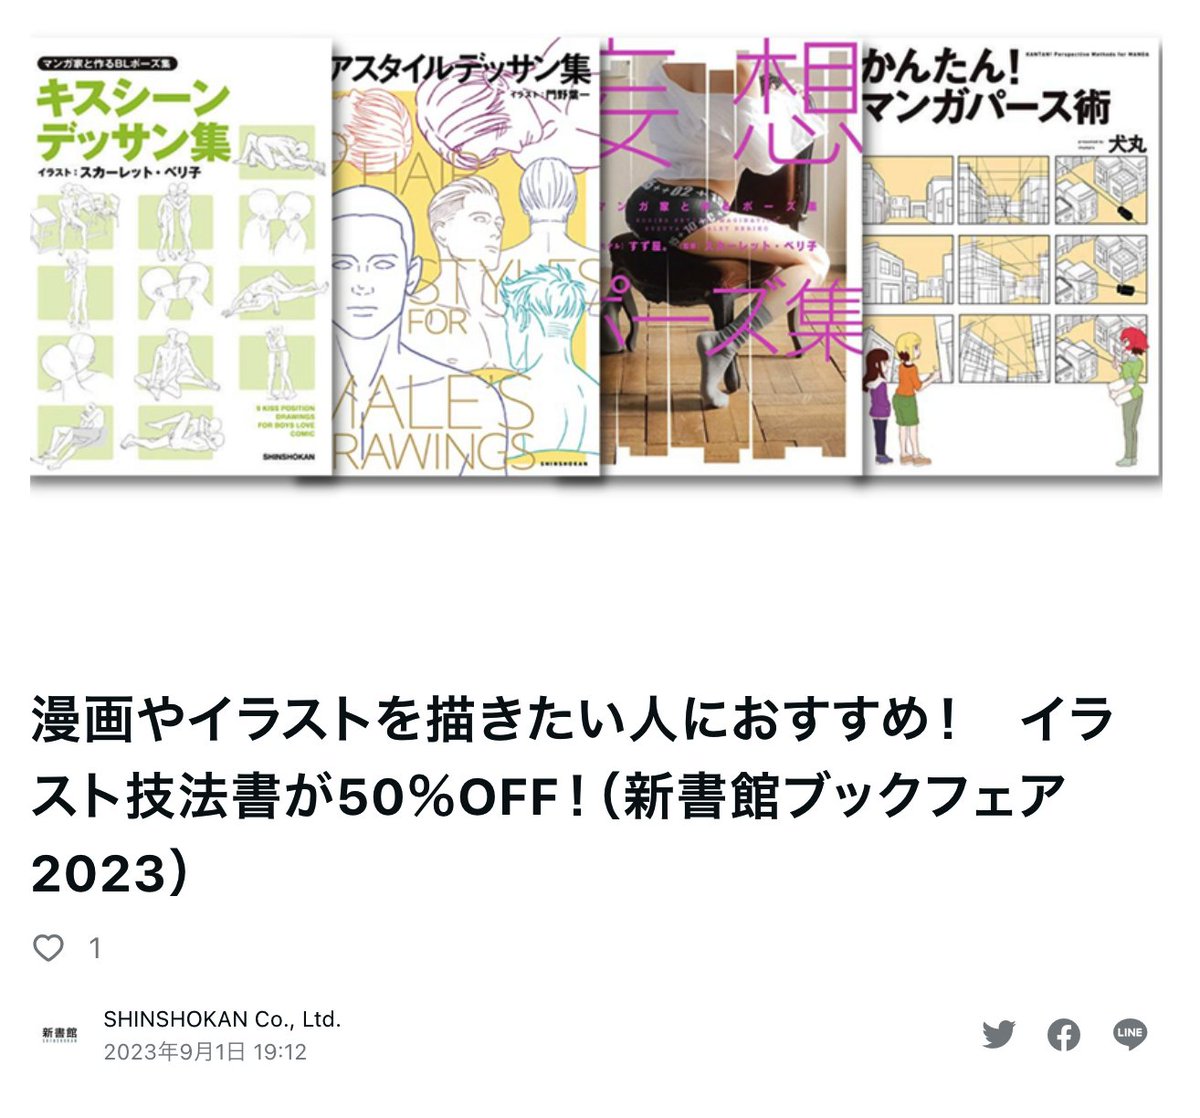 「新書館ブックフェア 2023」 コミック・イラスト技法書含む対象作品2,500冊以上が50%OFF!（一部対象外の作品もあります） 【実施期間】2023年9月1日(金)〜9月4日(月) 【対象作品】shinshokan.co.jp/news/n53971.ht…… noteのまとめはコチラ note.com/shinshokan/n/n…